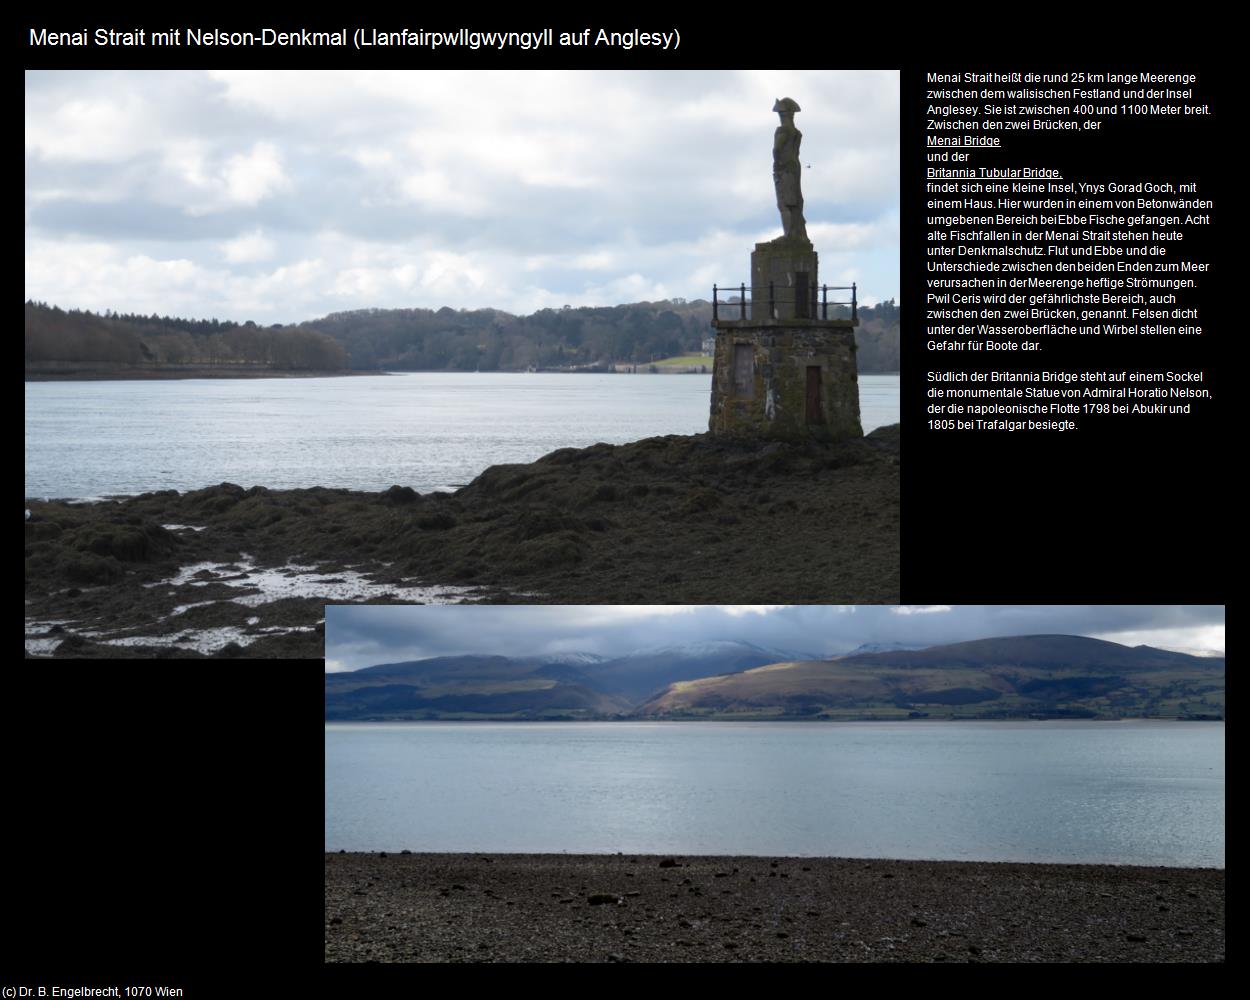 Menai Strait mit Nelson-Denkmal  (Llanfairpwllgwyngyll auf Anglesy) in Kulturatlas-ENGLAND und WALES(c)B.Engelbrecht